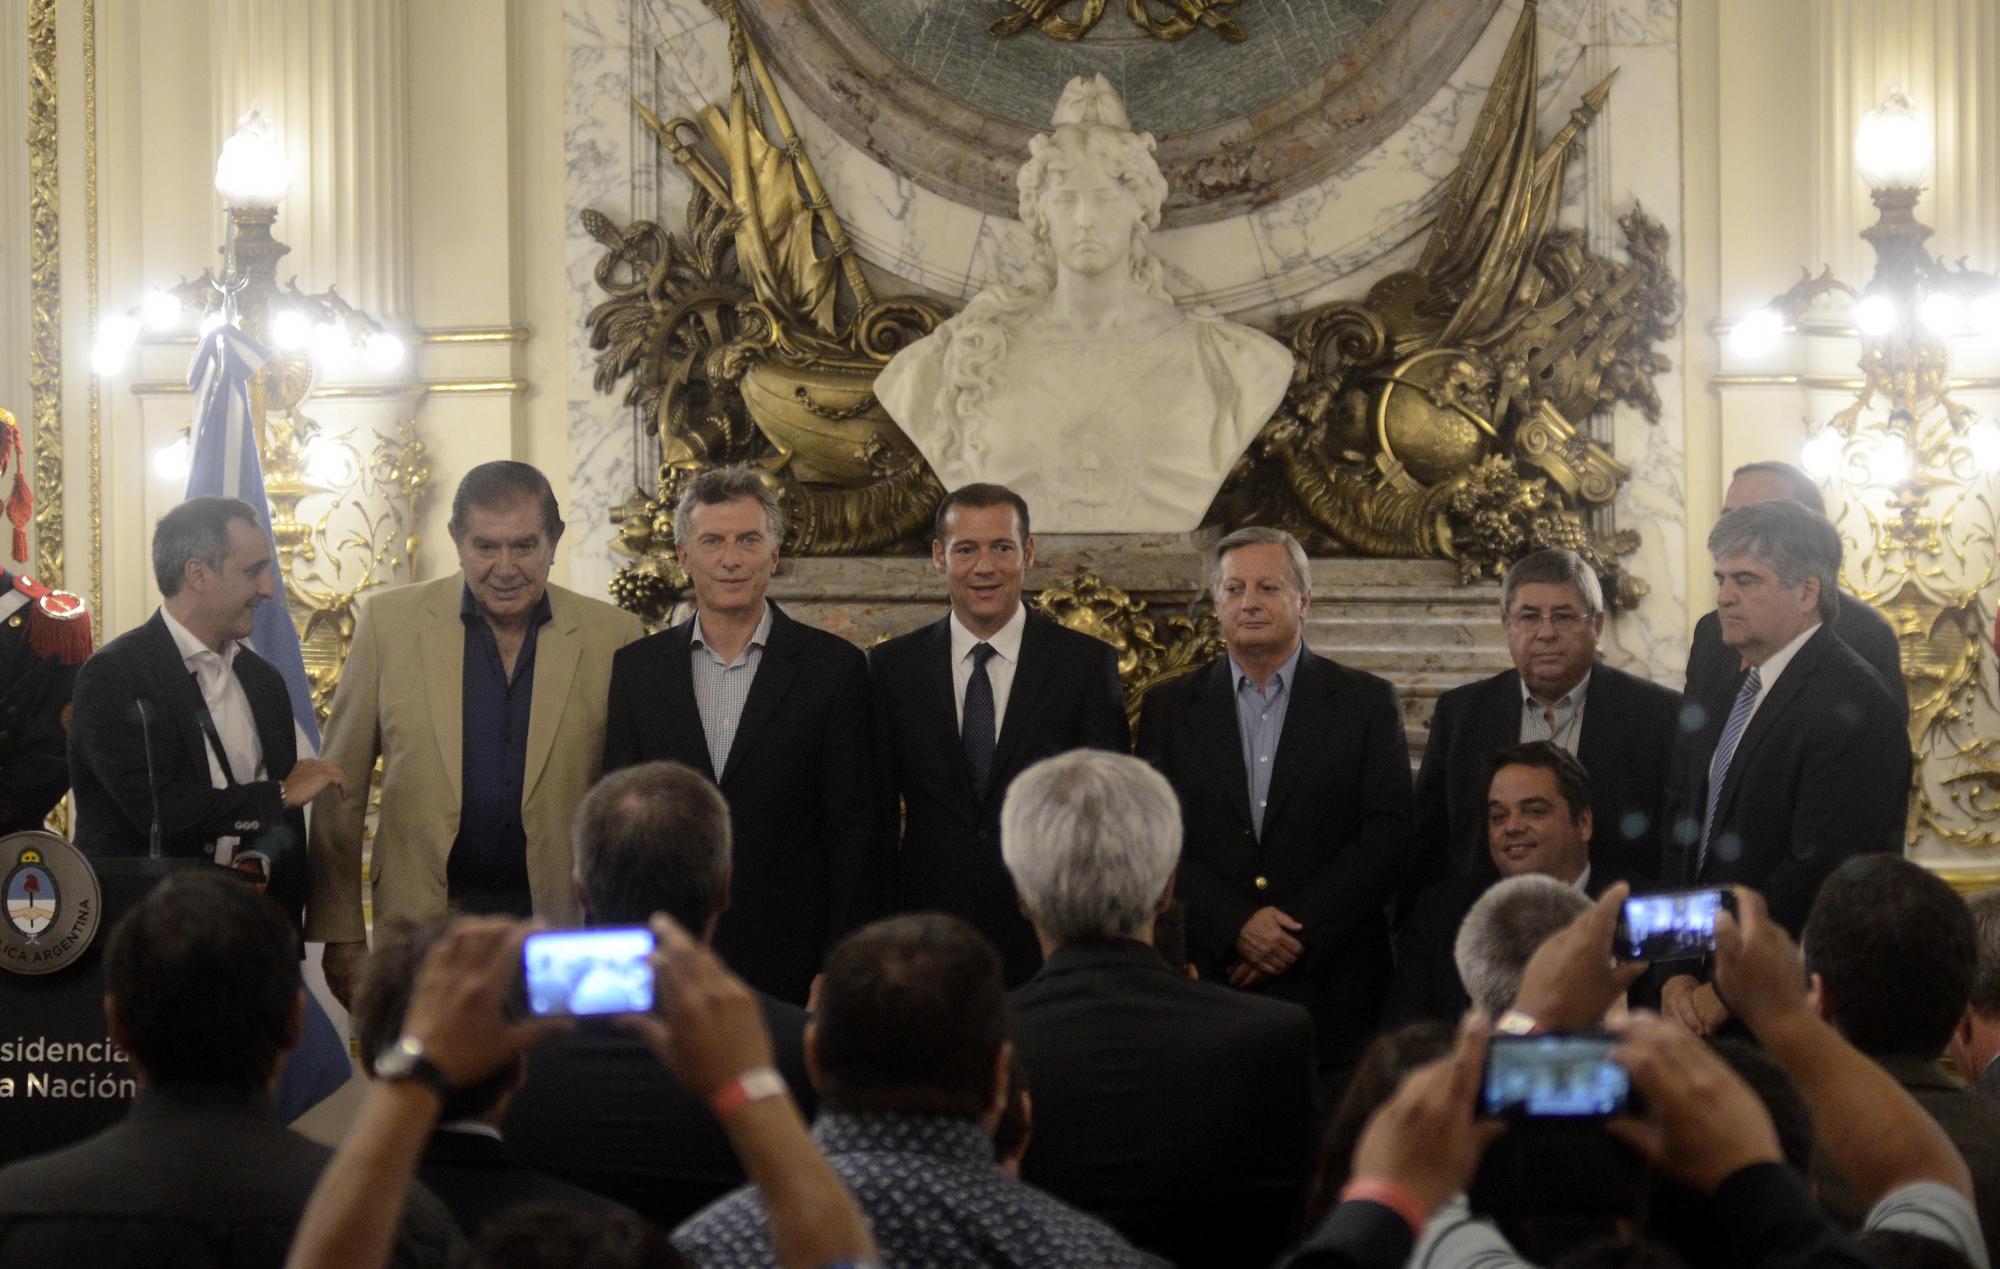 El acto que anunció la adenda de Vaca Muerta reunió a los principales actores políticos del momento en Casa Rosada. (Foto: gentileza)